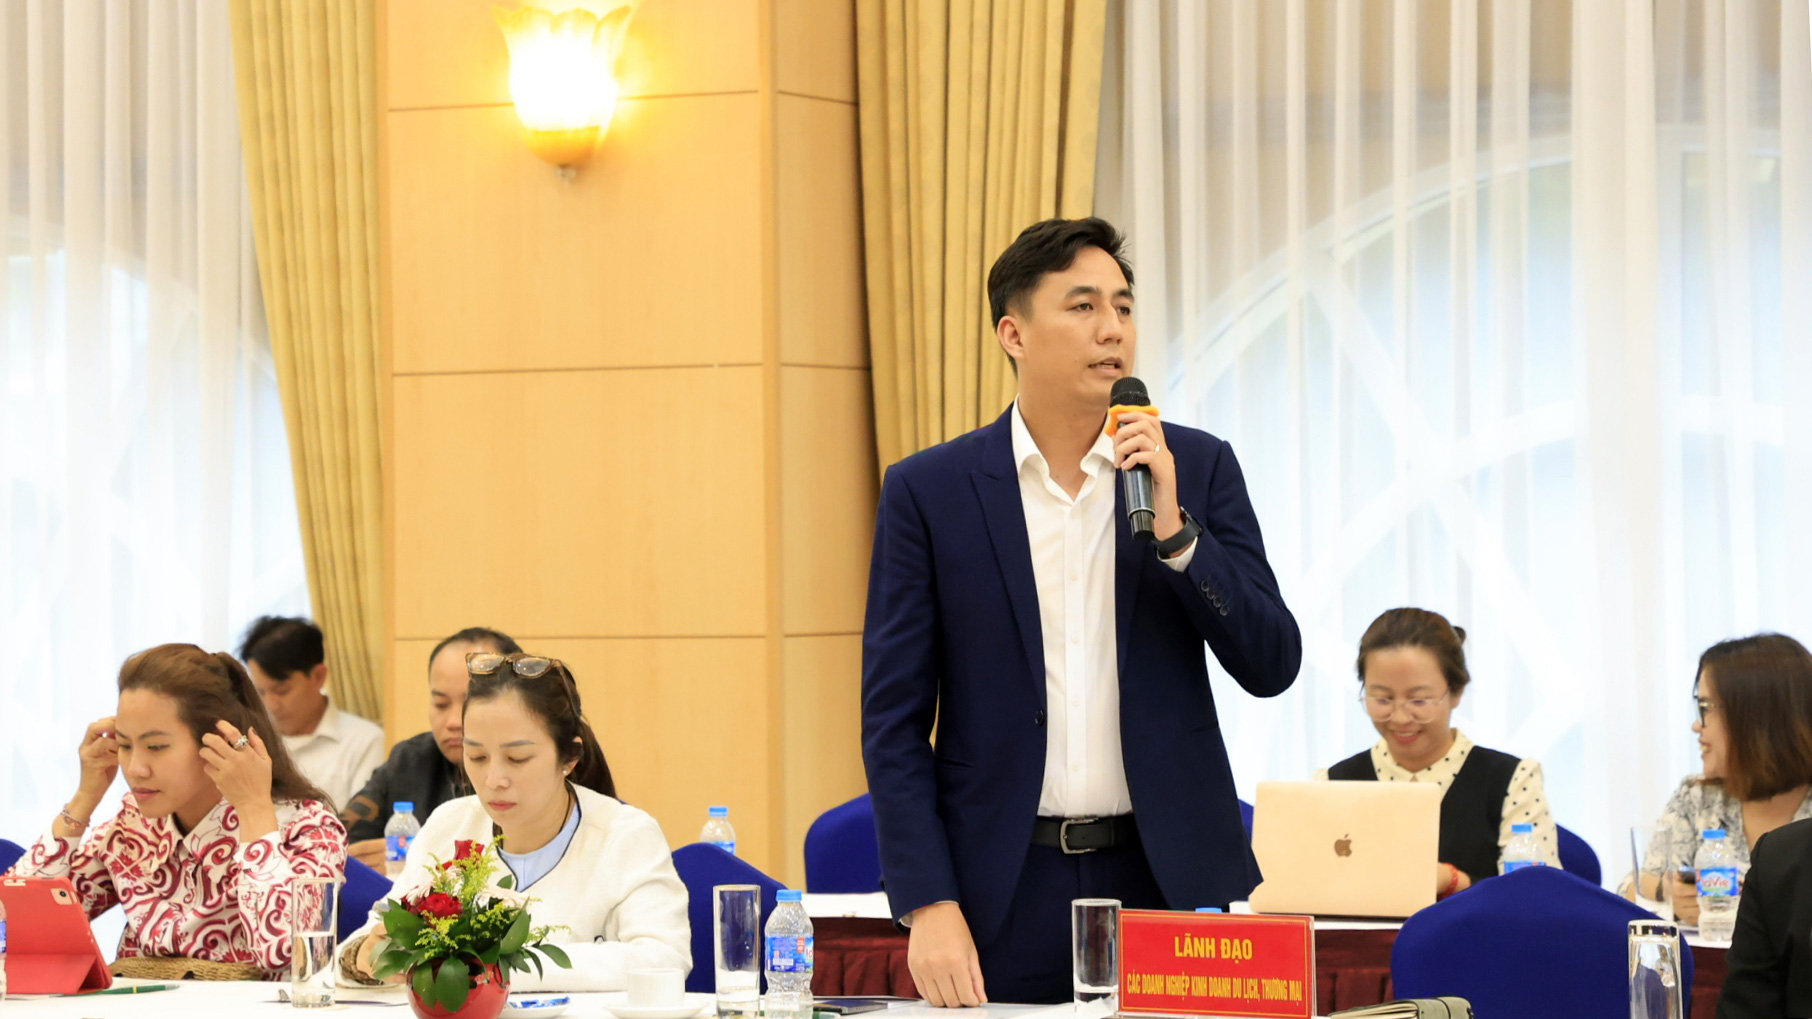 Ông Nguyễn Minh Tân (Công ty T Group): Xu hướng du lịch nhóm nhỏ, nên doanh nghiệp phải xây dựng ứng dụng du lịch để du khách lựa chọn tự tạo lịch trình cho mình